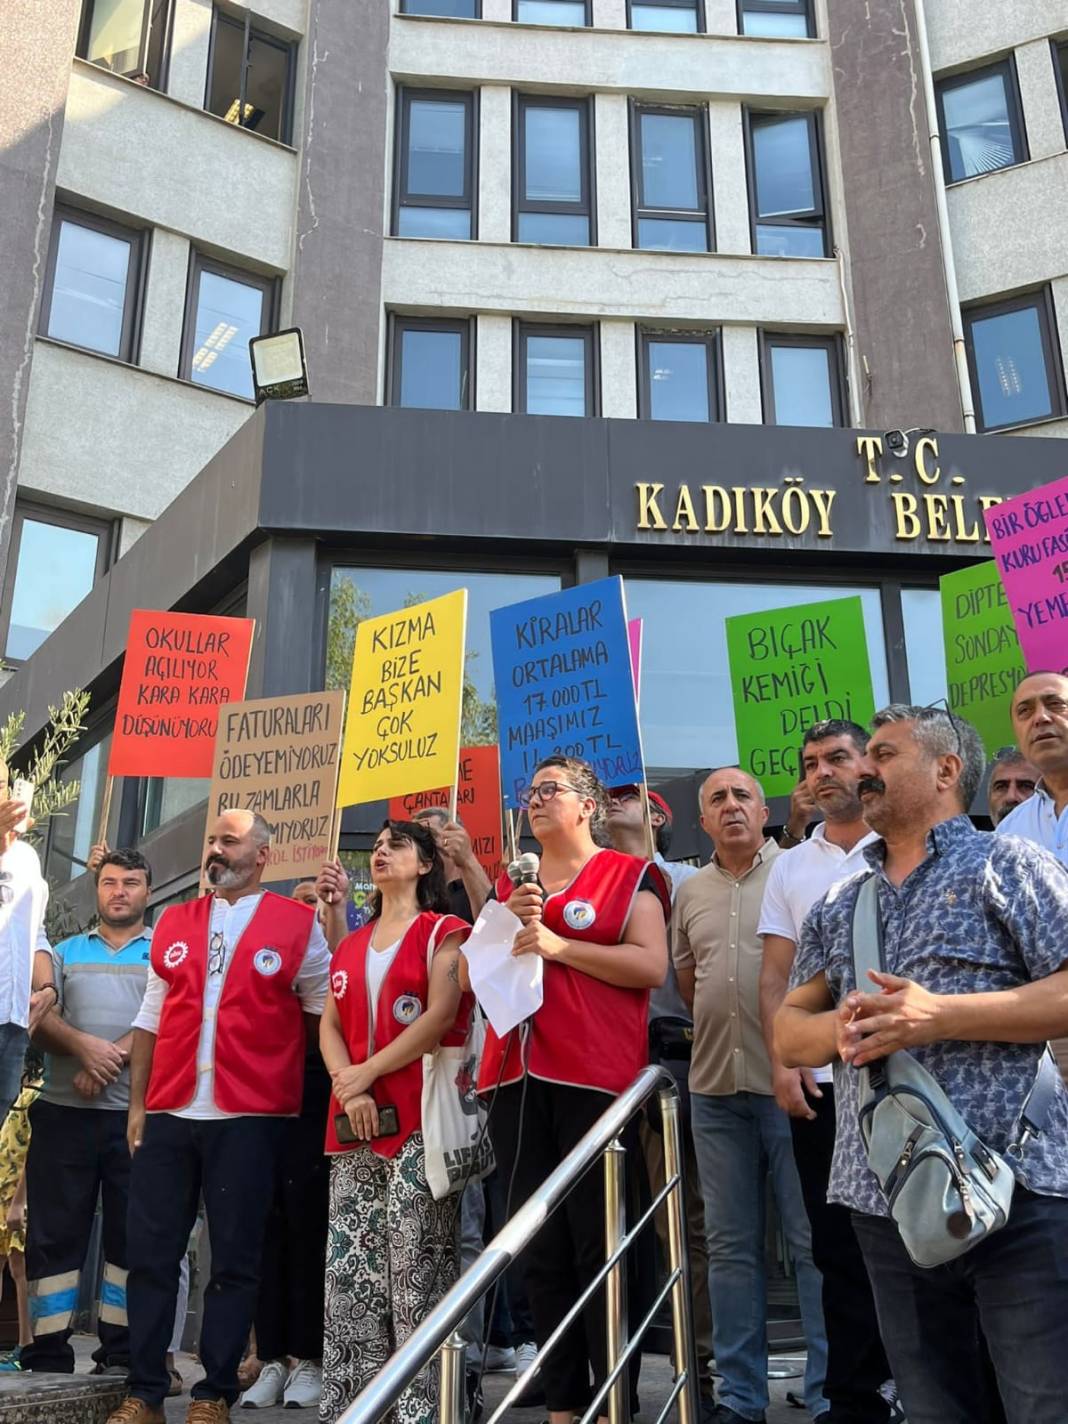 Kadıköy Belediyesi’nde iş bırakma eylemi: Barınamıyoruz, beslenemiyoruz, geçinemiyoruz 6